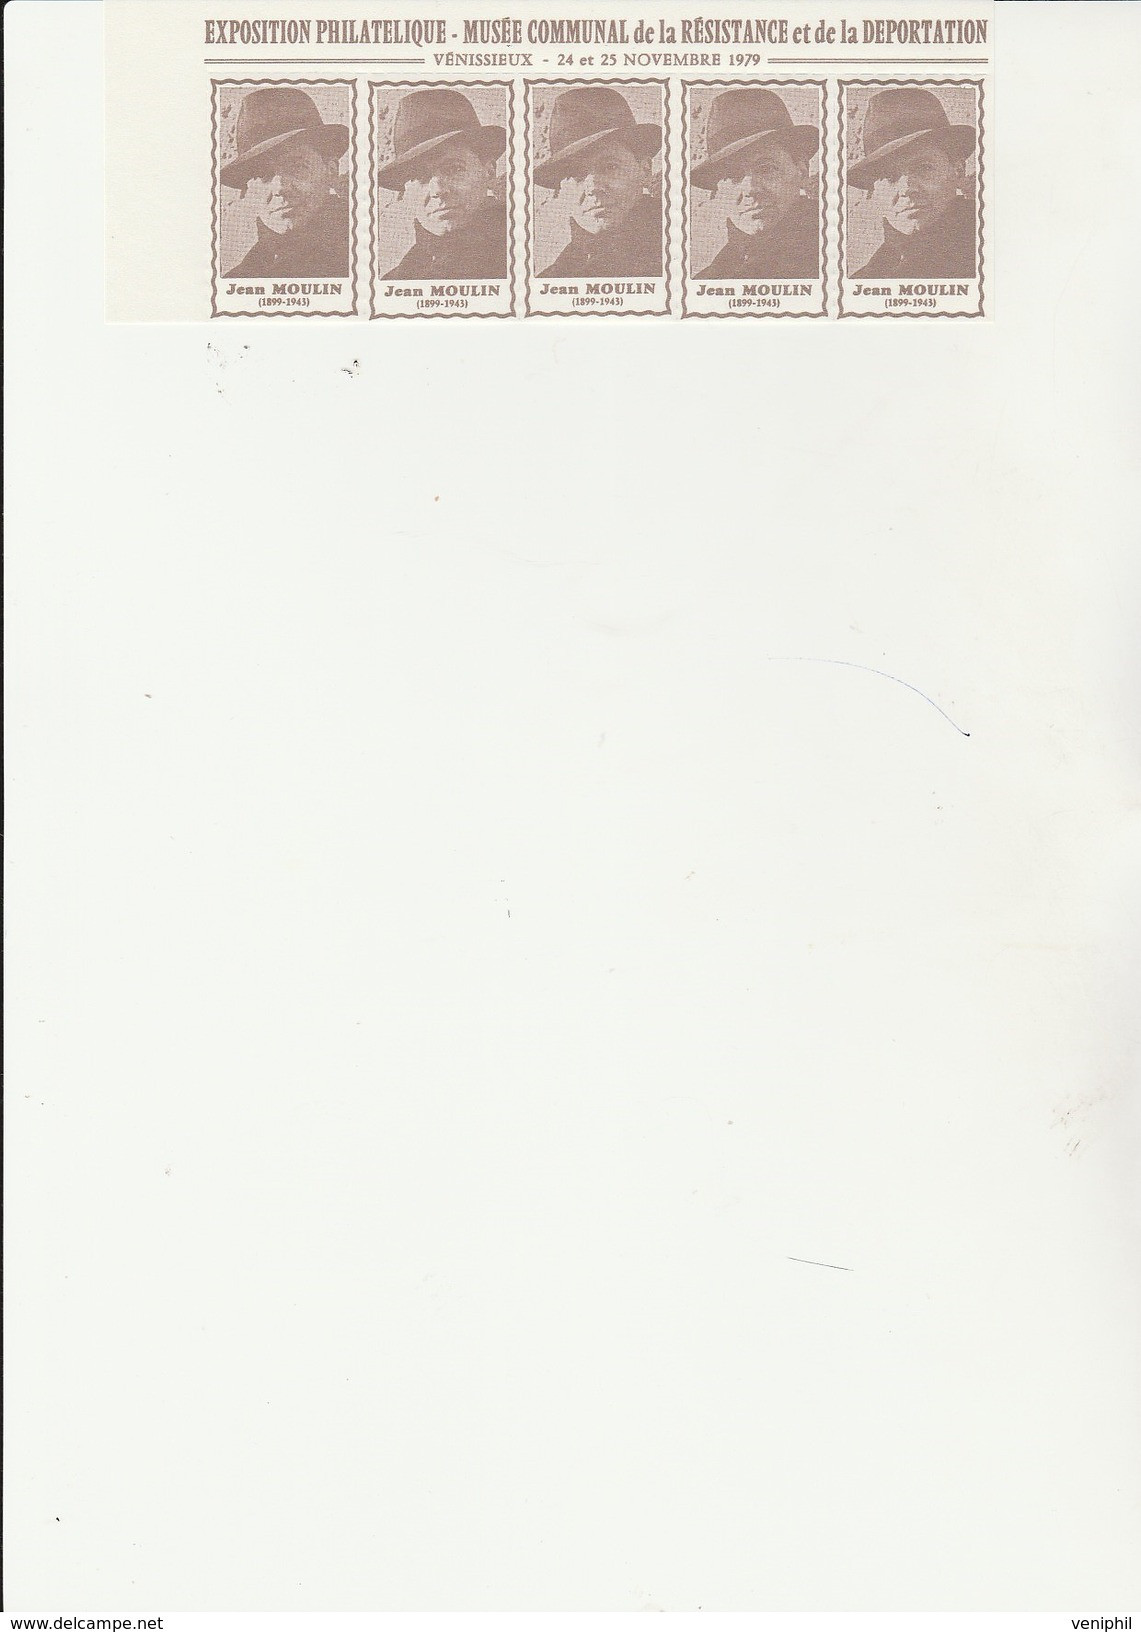 BANDE DE 5 VIGNETTES JEAN MOULIN - EXPO MUSEE COMMUNAL DE LA RESISTANCE - VENISSIEUX - 1979 - Briefmarkenmessen